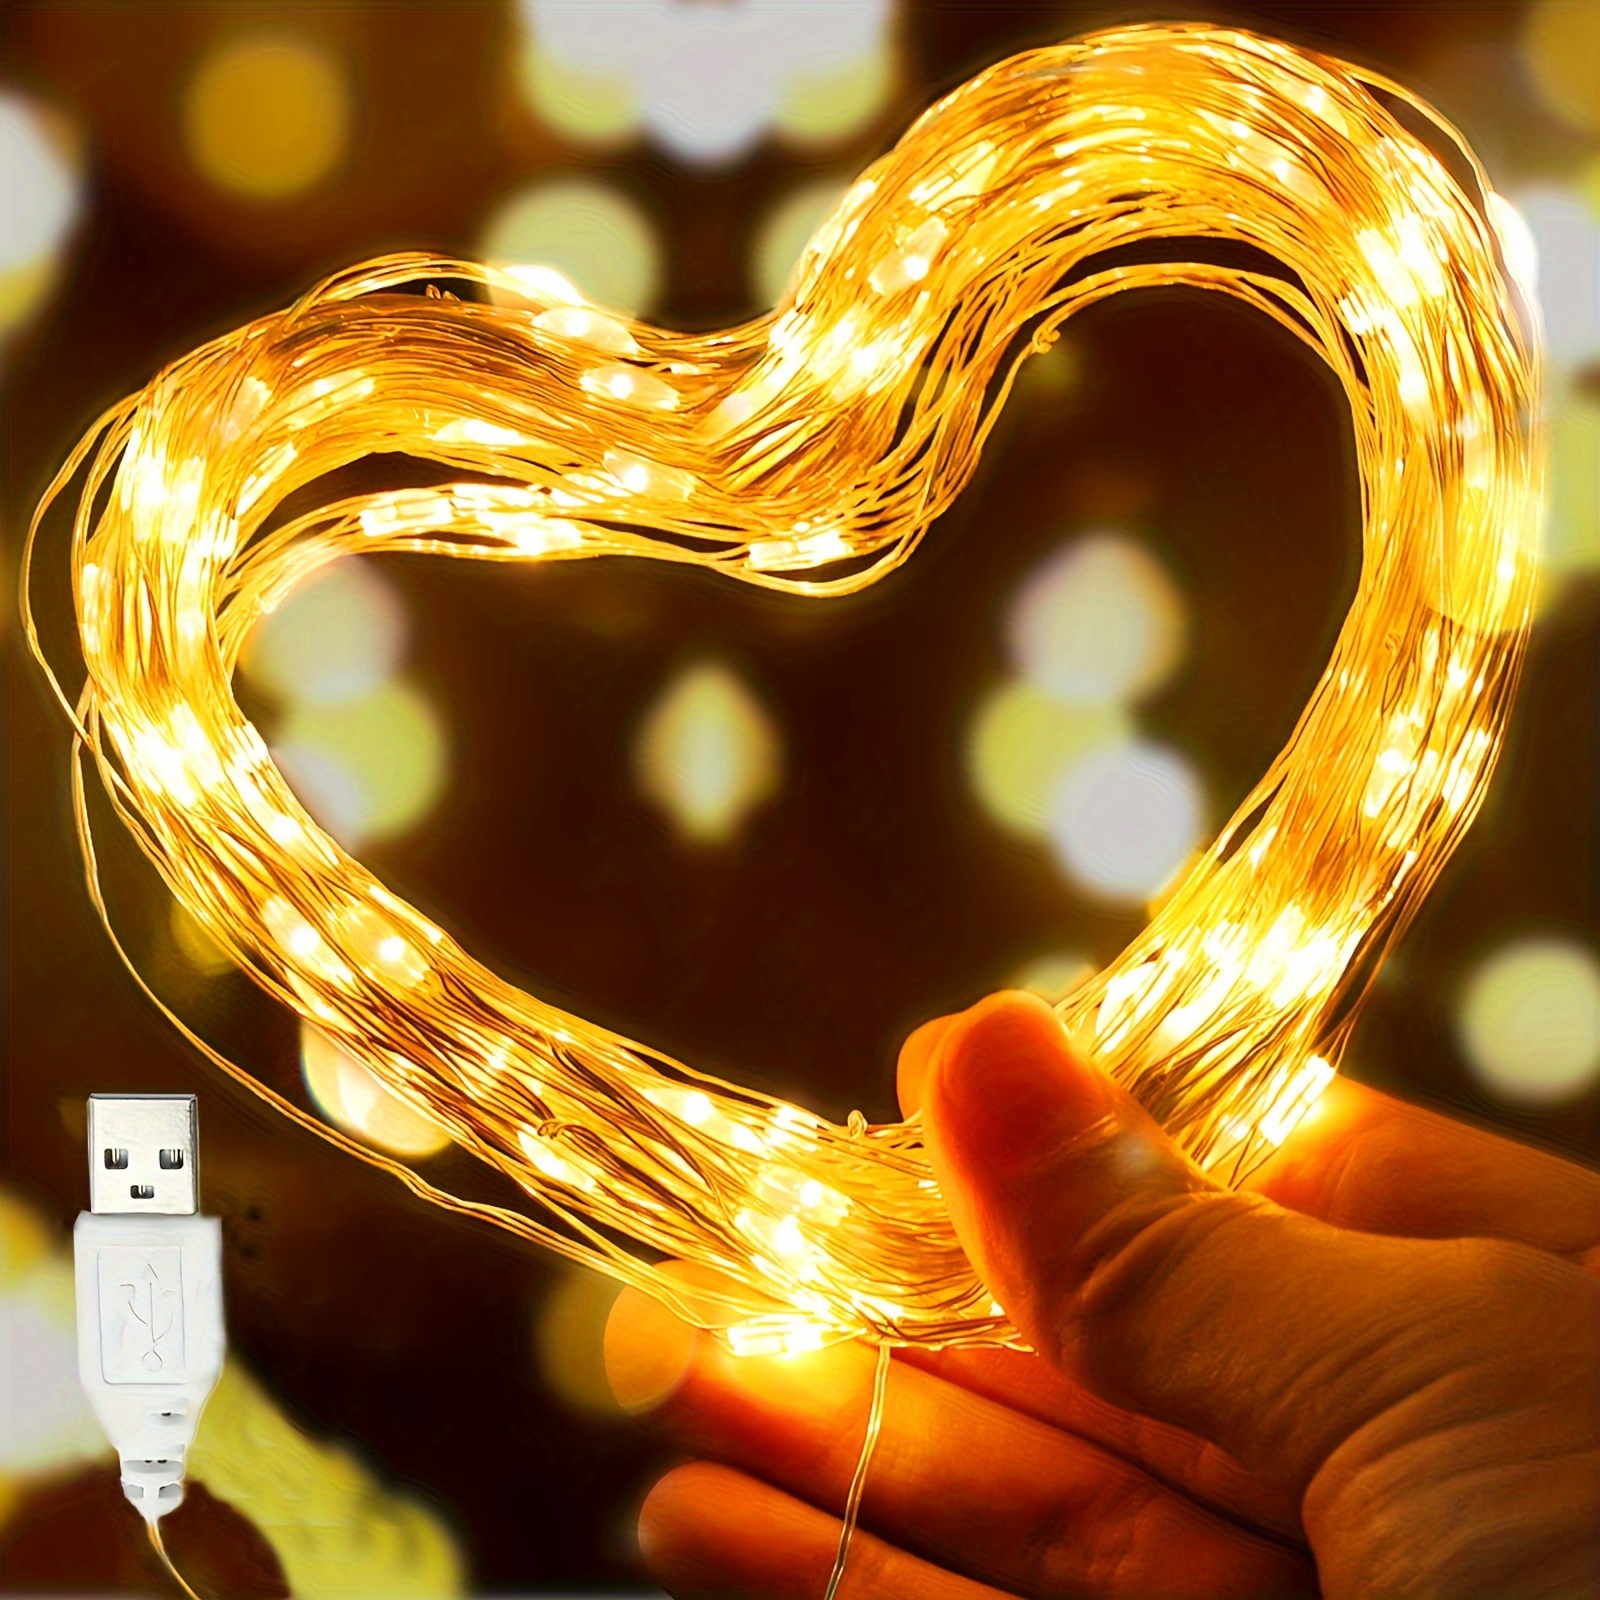 Acheter Guirlande lumineuse LED USB 100/50/25 pieds, ampoule en plastique  G40, 5V, 1W, étanche, pour l'extérieur, tente, Patio féerique, décoration  de mariage